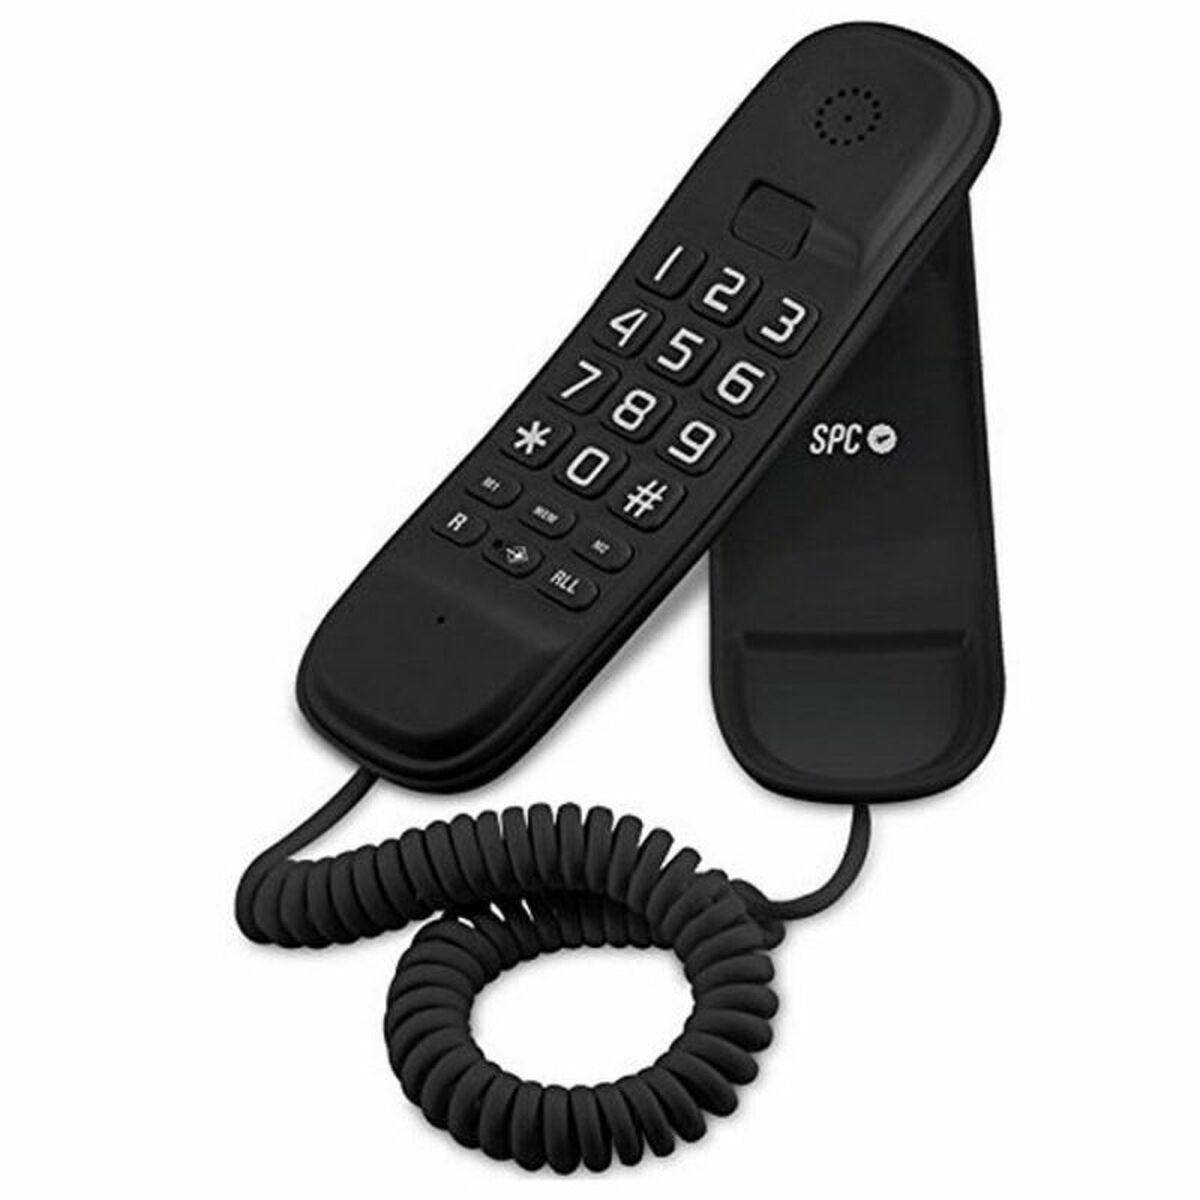 cable telefono fijo 2 metros - color negro - Compra venta en